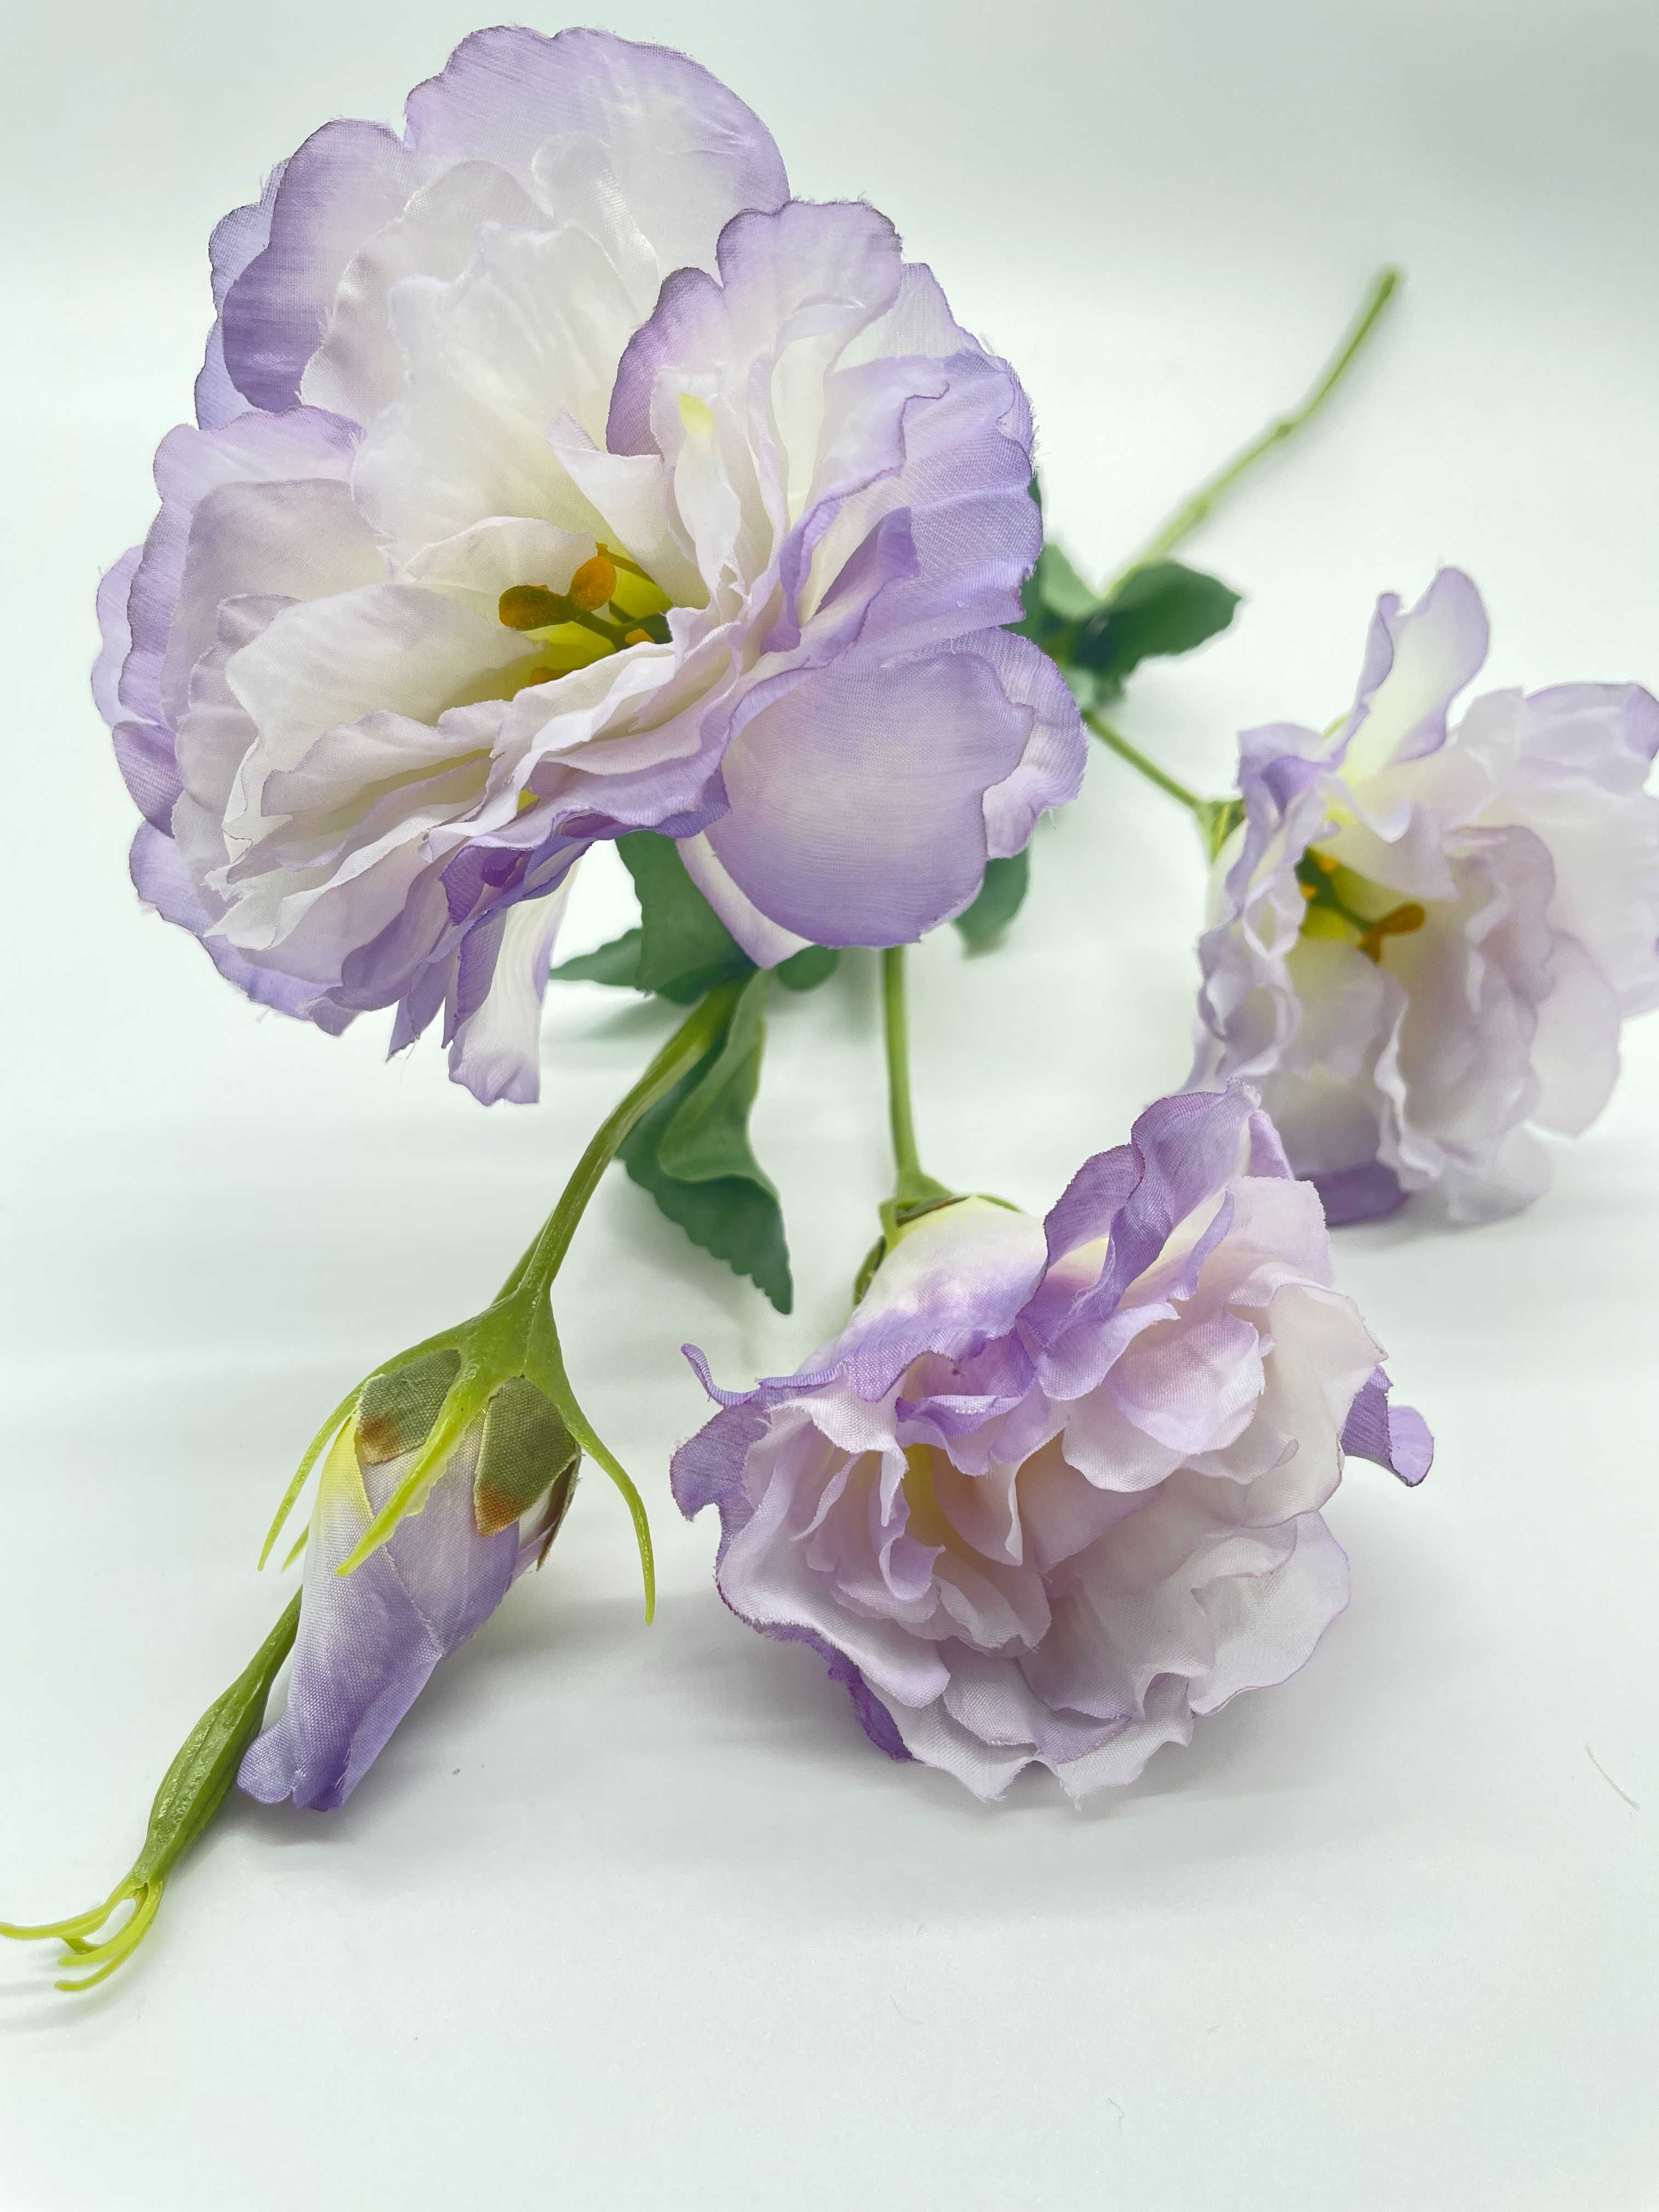 Eustoma Sztuczny Kwiat Wazon 68 cm Jasny Fiolet Gałązka